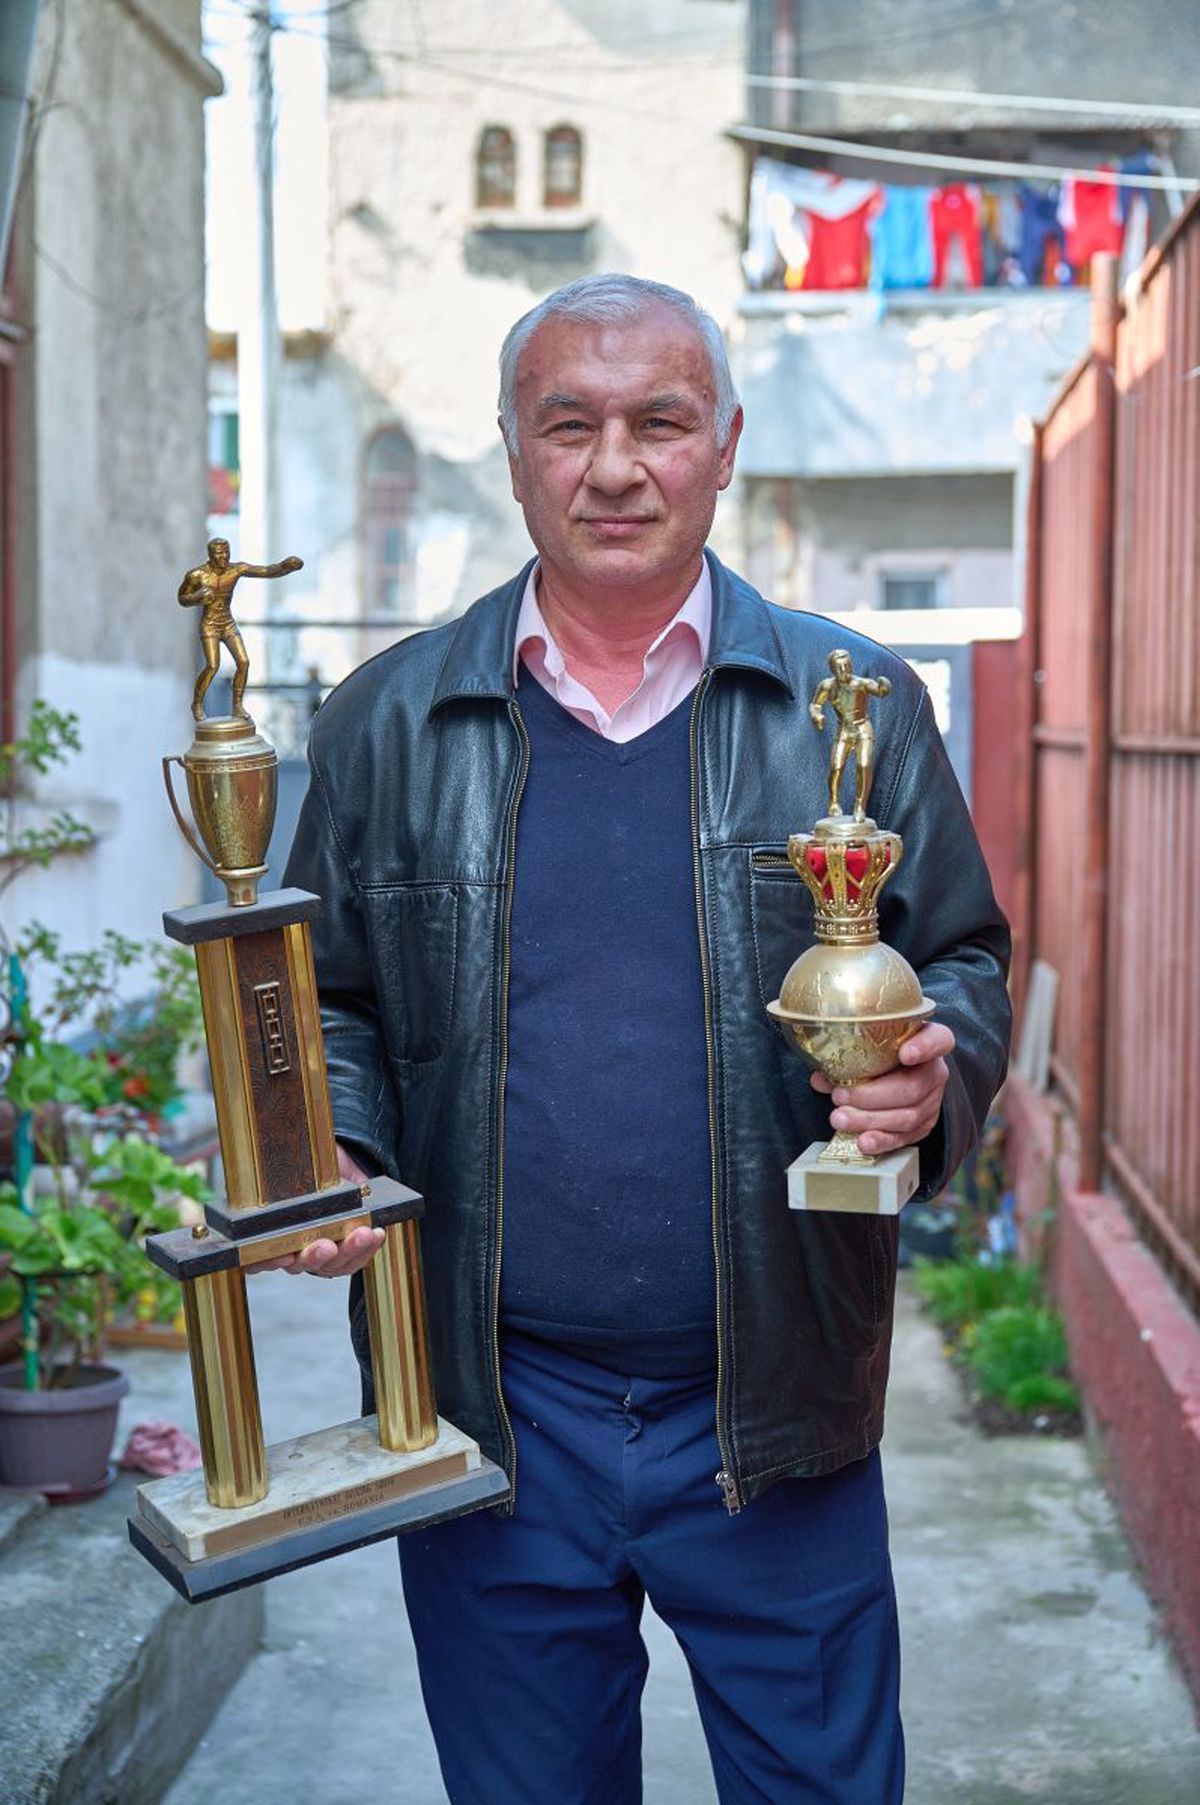 Viață de campion: 12 m² + igrasie » Cel mai talentat boxer al României are o pensie infimă și trăiește într-o casă minusculă și dărăpănată din Ferentari! Cum îl poți ajuta